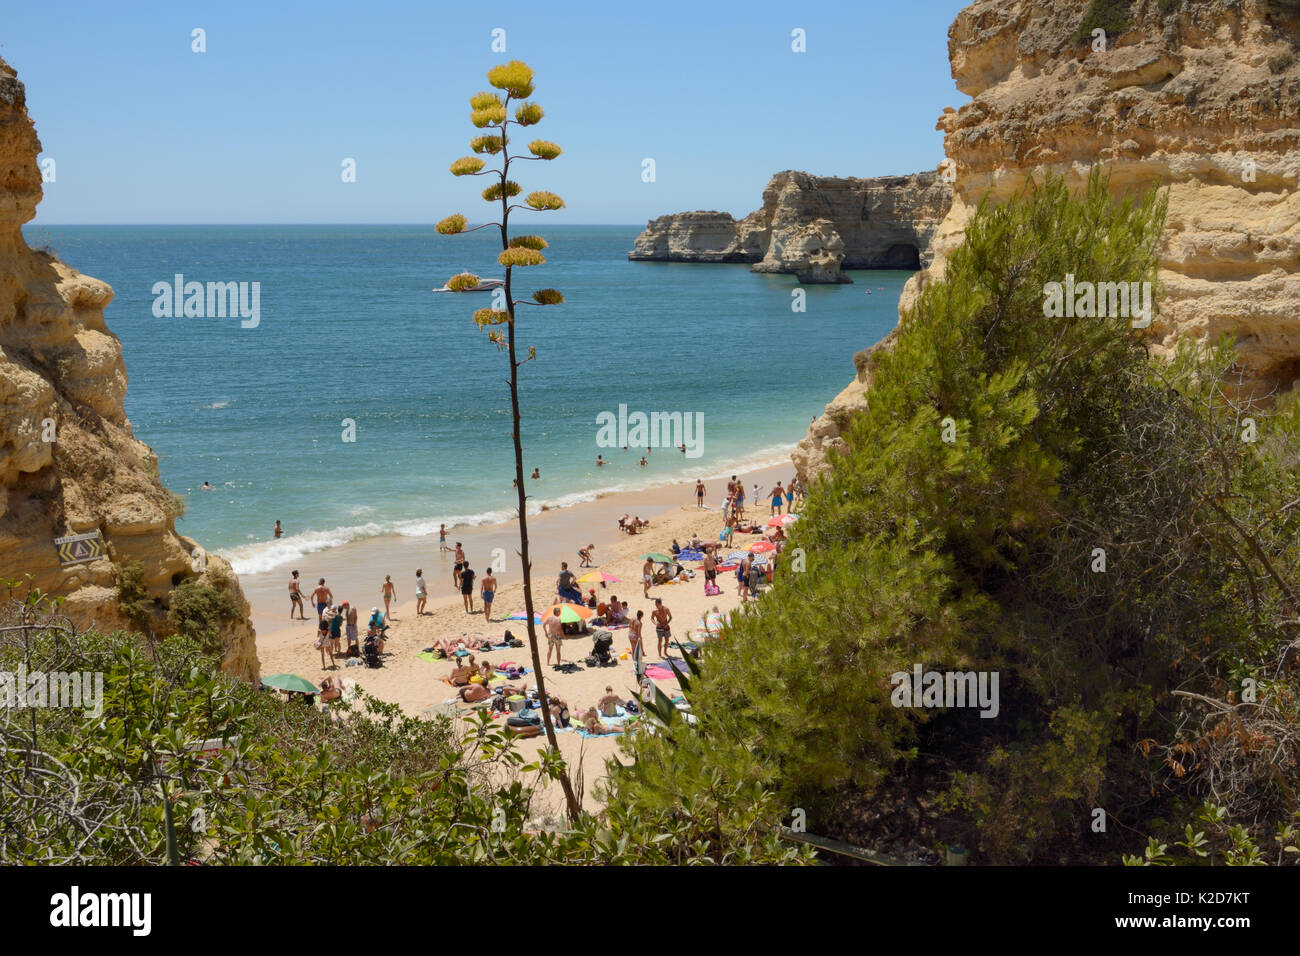 Secolo impianto (Agave americana) fioritura al di sopra di Praia da Marinha beach, vicino a Carvoeiro, Algarve, Portogallo, luglio 2013. Foto Stock